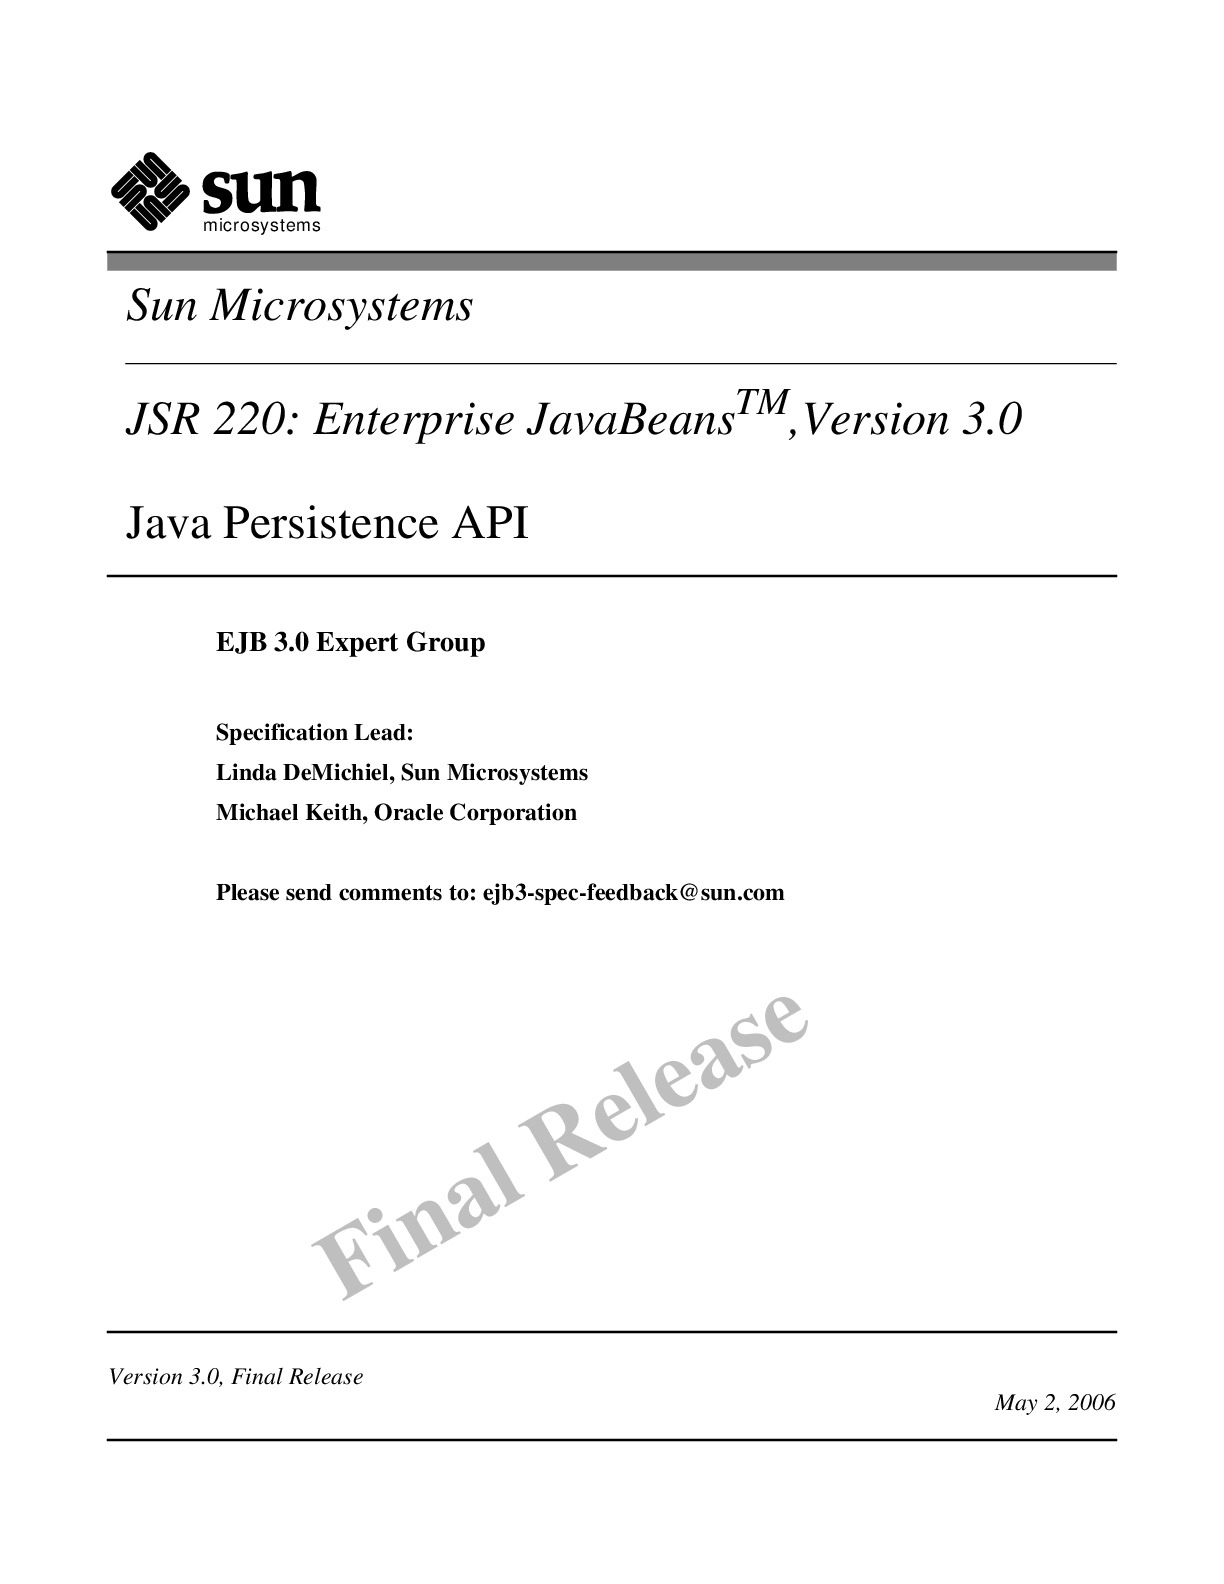 [JAVA][Enterprise JavaBeans 3.0 Java Persistence API]